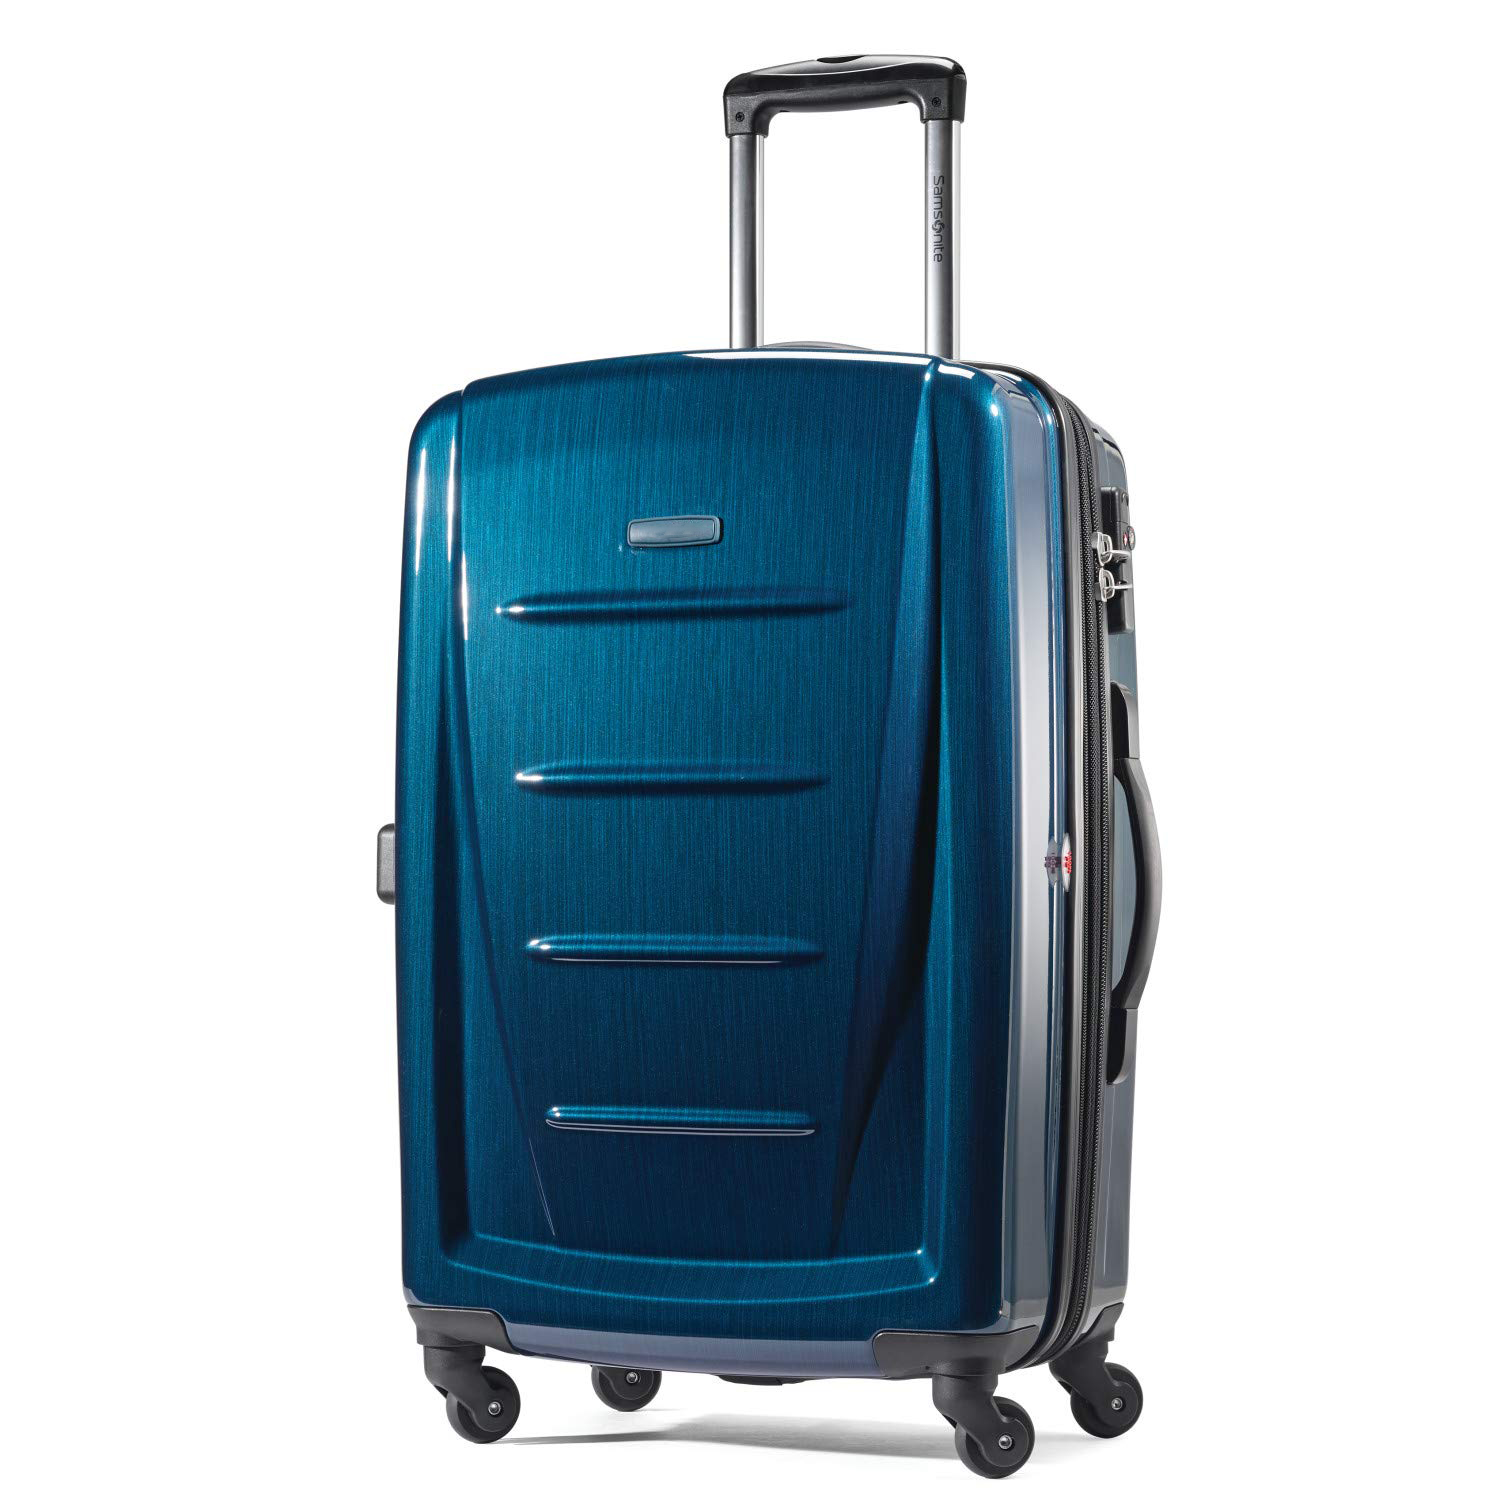 Valise rigide extensible à roulettes bleu multicolore valise